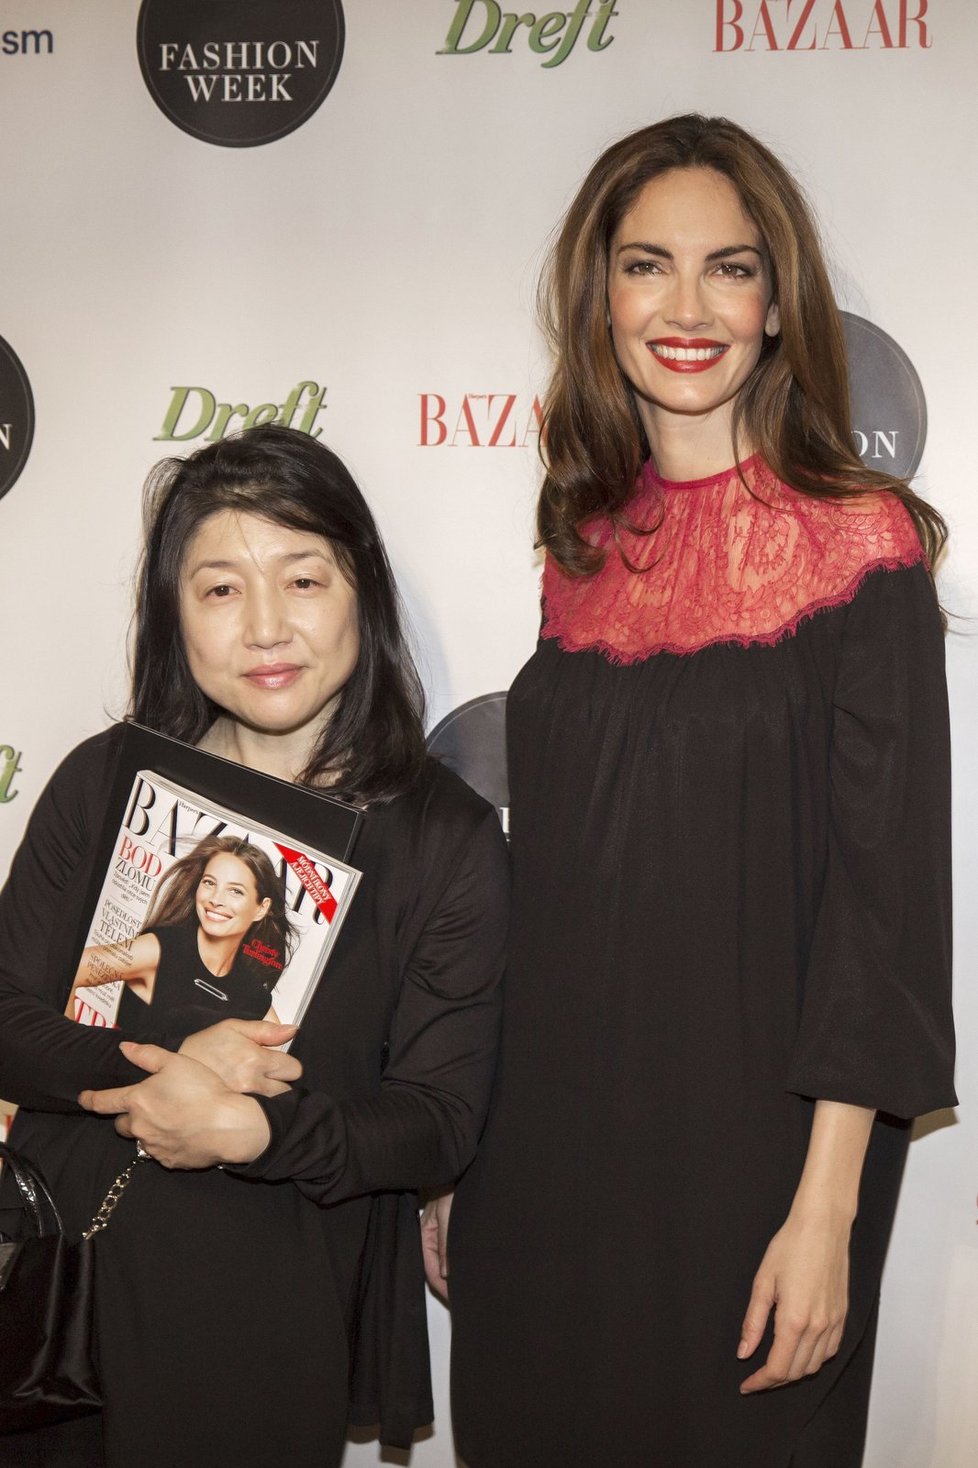 Hvězdy roku 2013: Usměvavá návrhářka Hirono prezentující se pod jménem Saphir East a supermodelka Eugenia Silva, jež některé její modely na slavnostním zahájení Fashion Weeku předvedla.